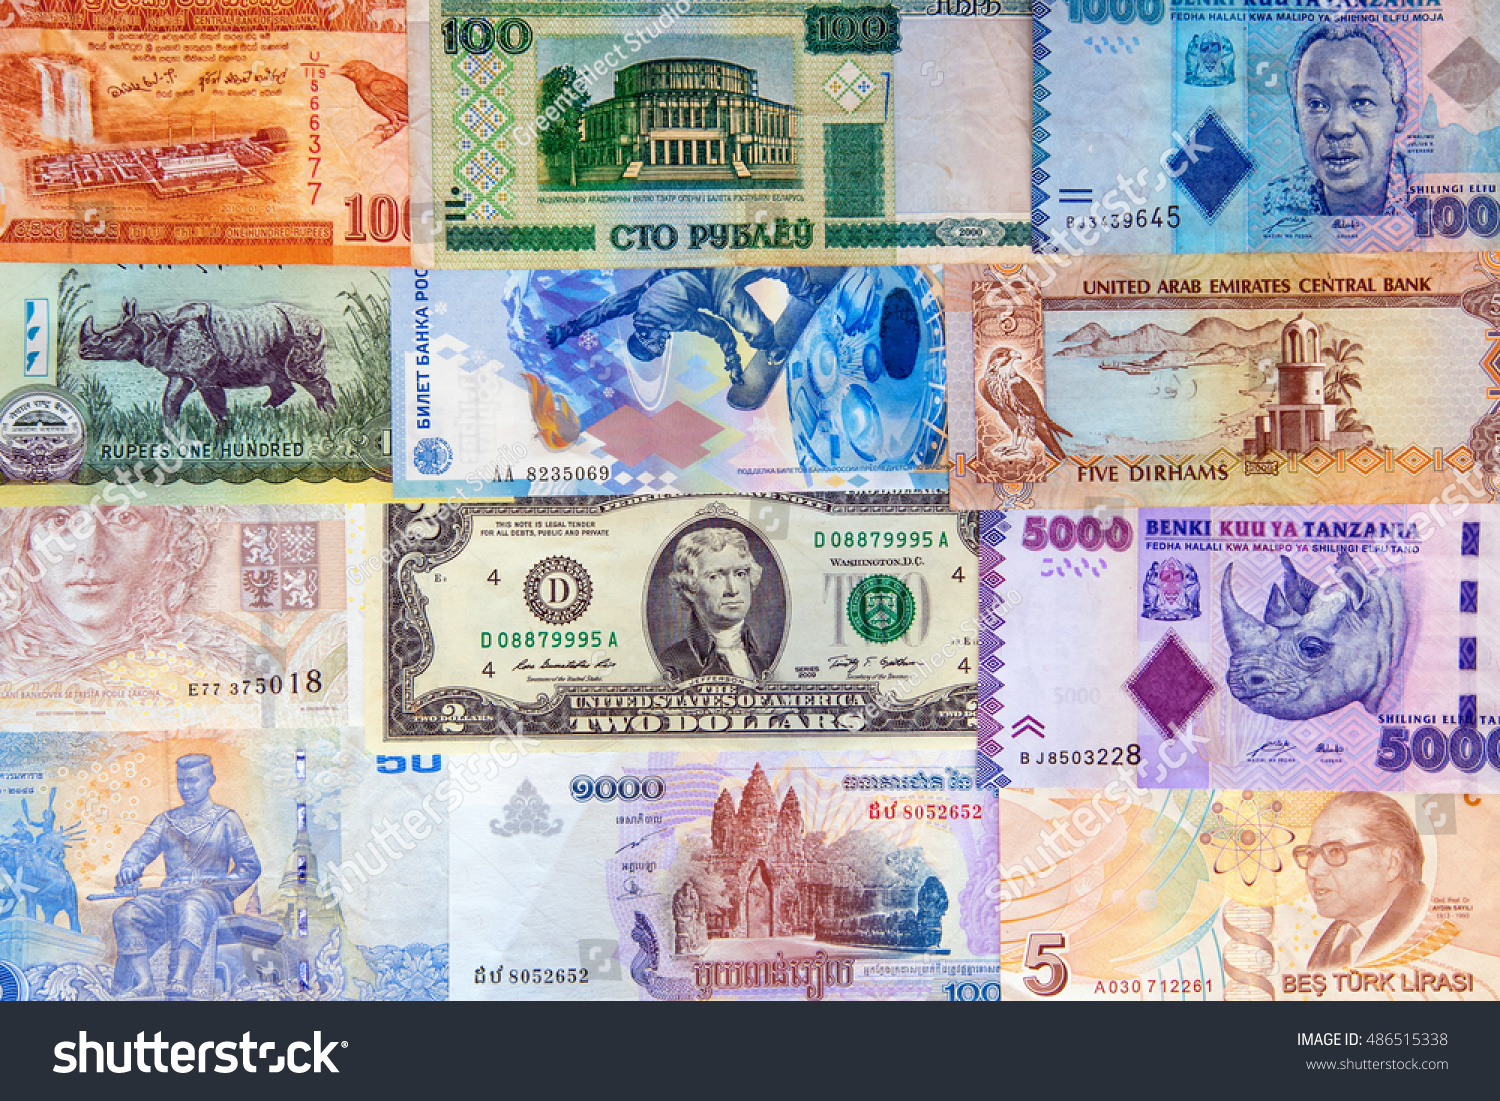 Валюта всех стран мира фото с названиями